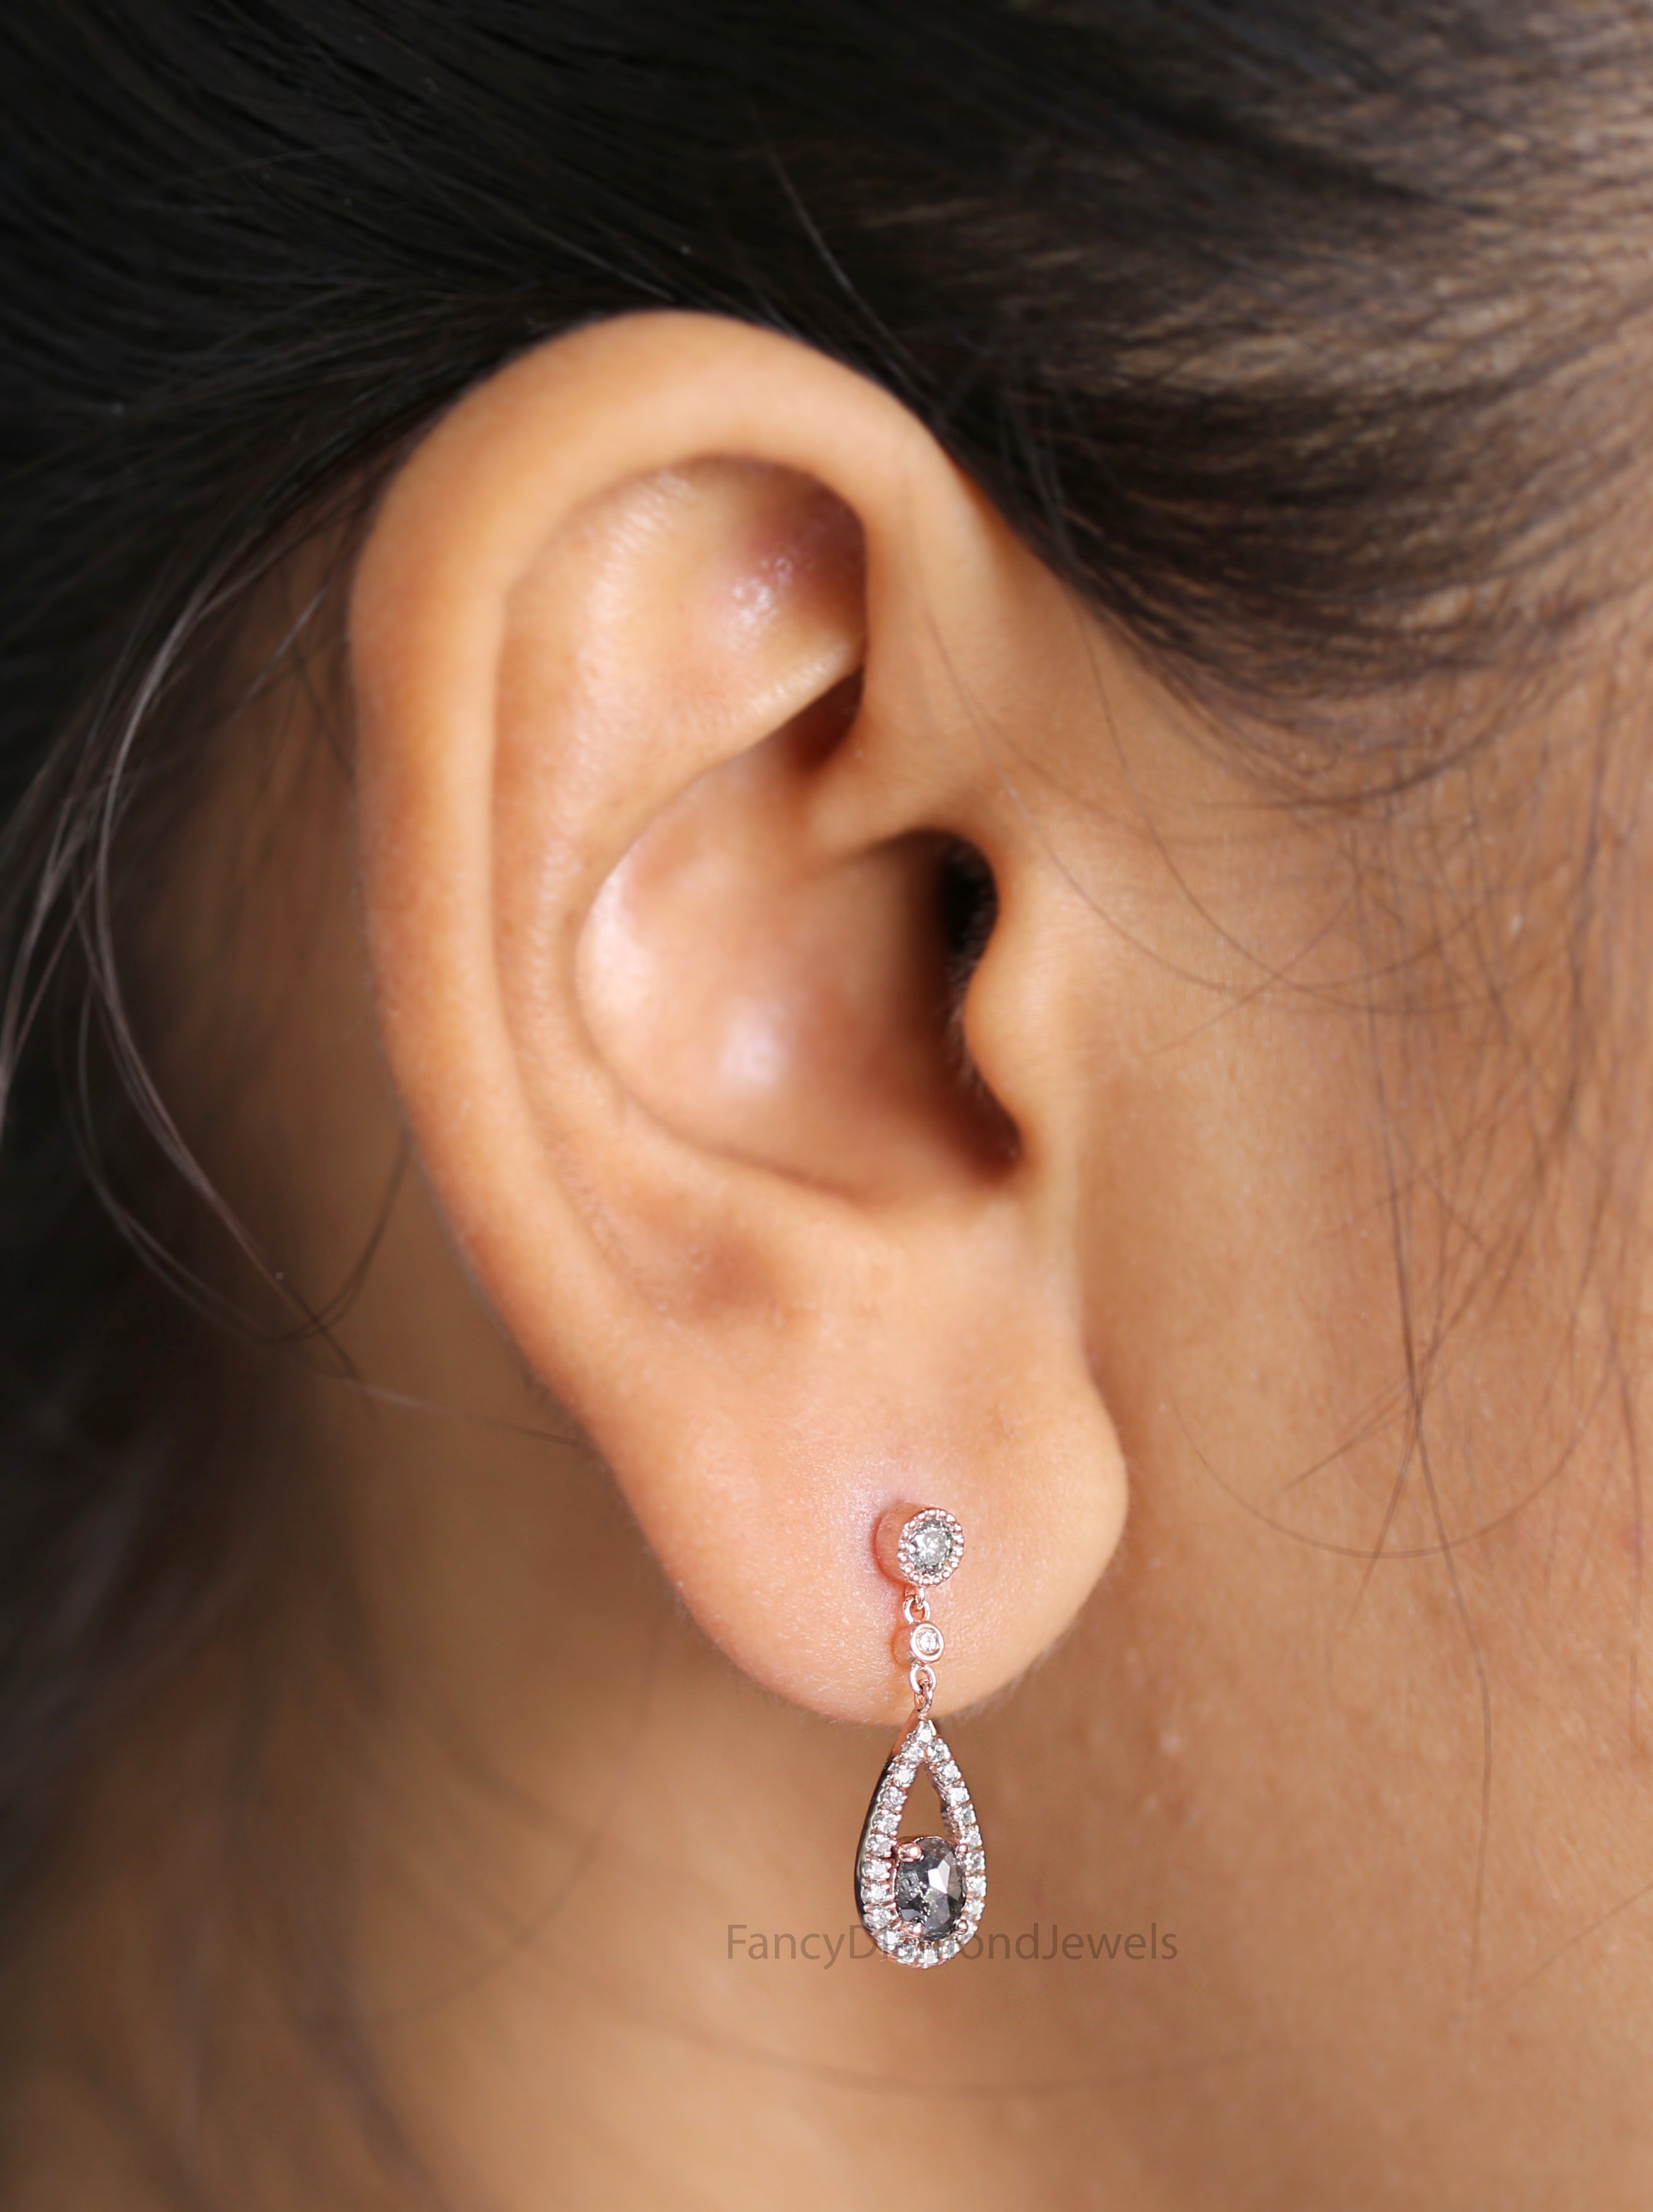 Oval Salt And Pepper Diamond Earring, Oval Shape Earring, Oval Cut Earring, Engagement Earring, Earlobe Earrings, Earrings Jewelry, KDL2772